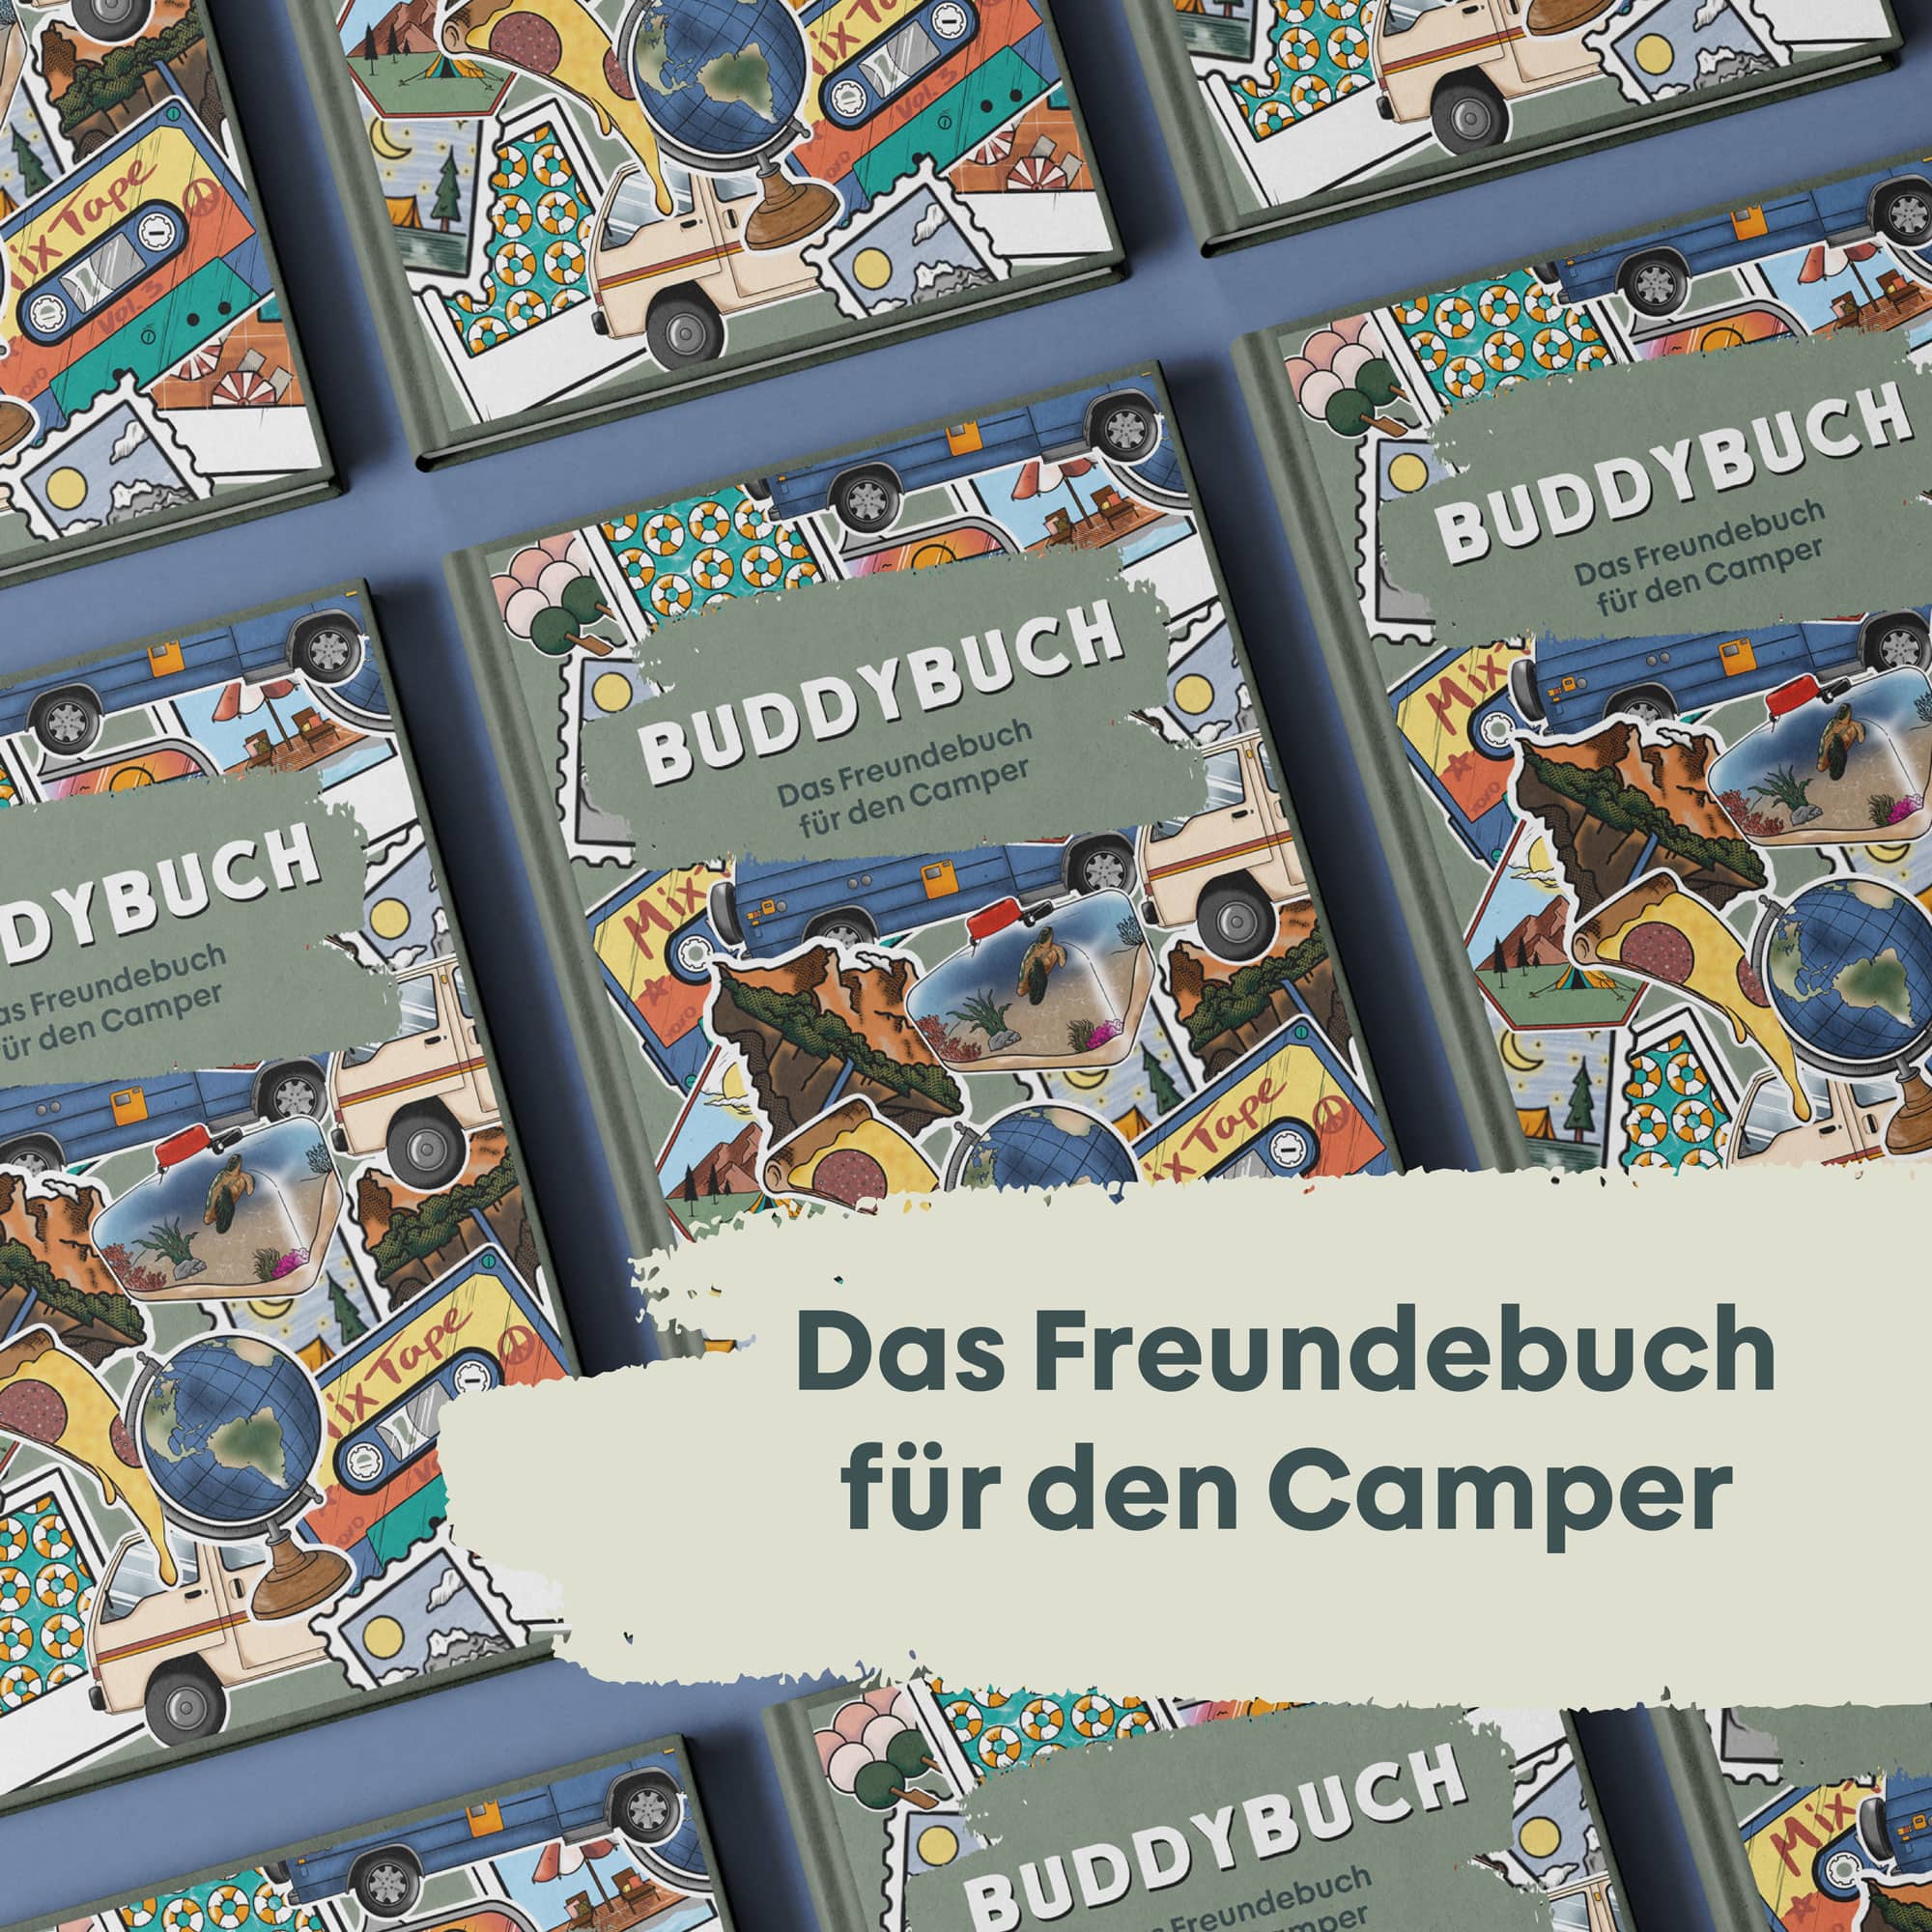 BUDDYBUCH - Das Freundebuch für Camper